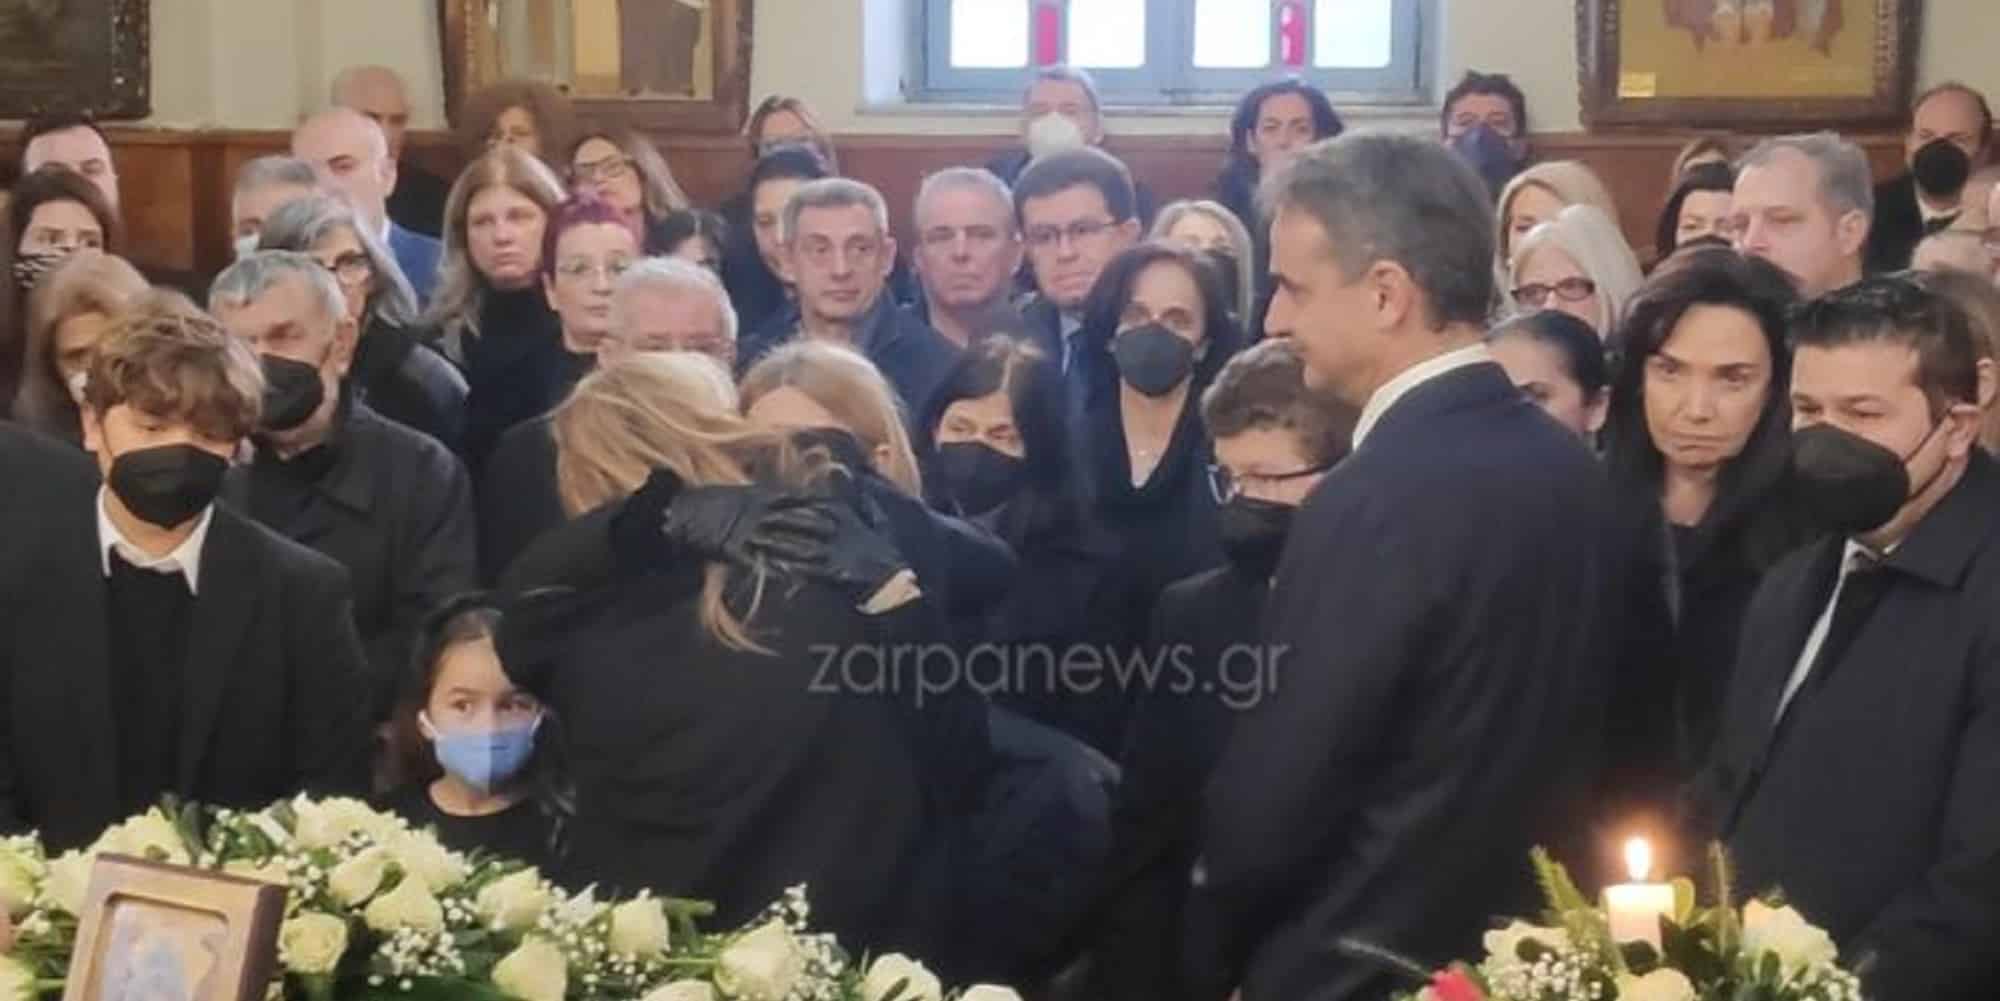 Ο Κυριάκος Μητσοτάκης στην κηδεία του Μανούσου Βολουδάκη